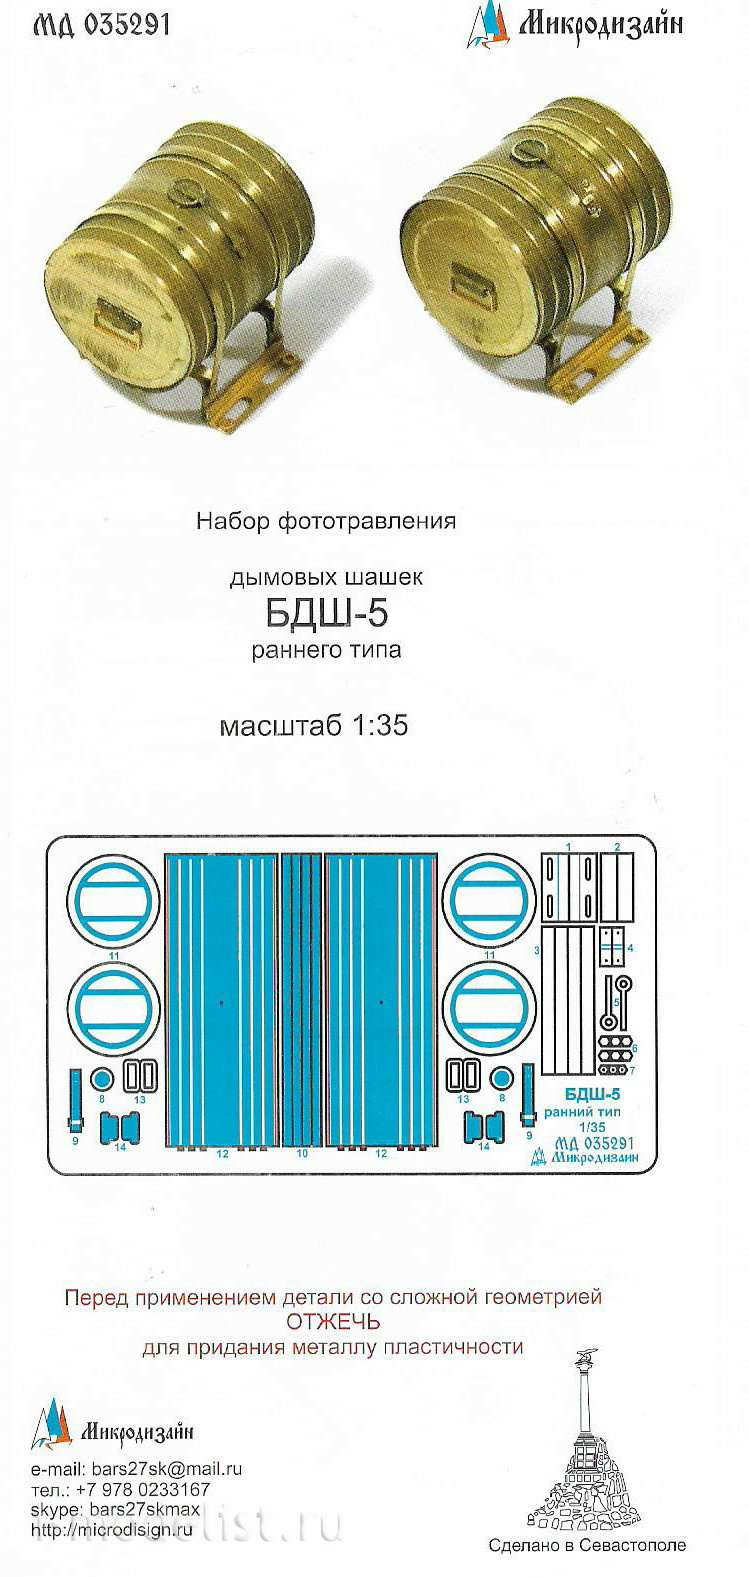 035291 Микродизайн 1/35 Кормовые дымовые шашки БДШ-5 (ранние) семейства Танка 34, СУ